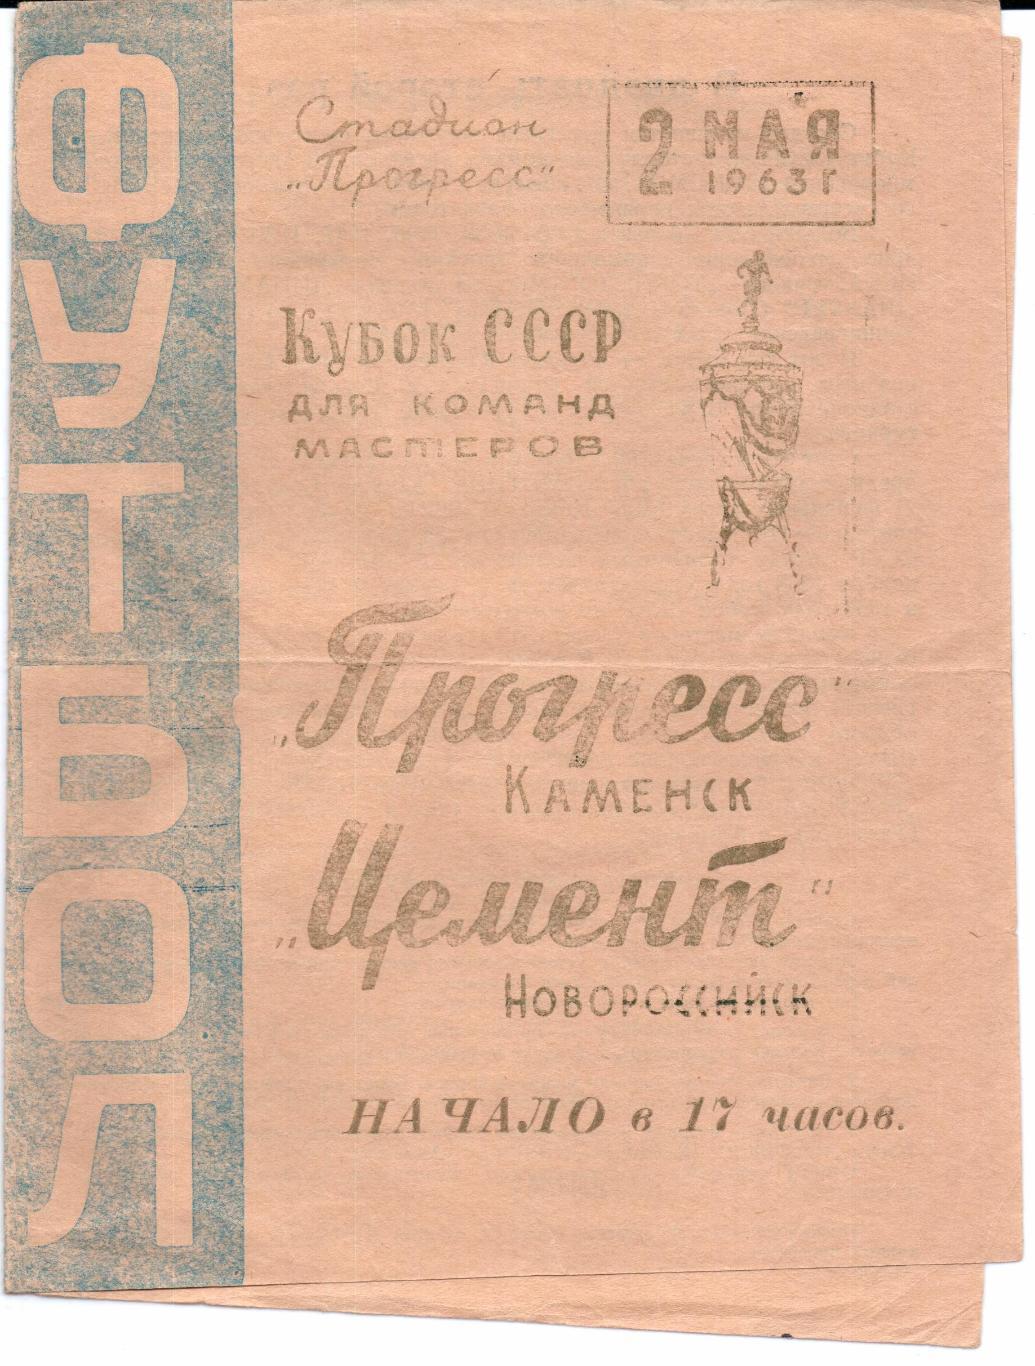 Кубок СССР Прогресс(Каменск)-Цемент(Нов ороссийск)02.05.1963